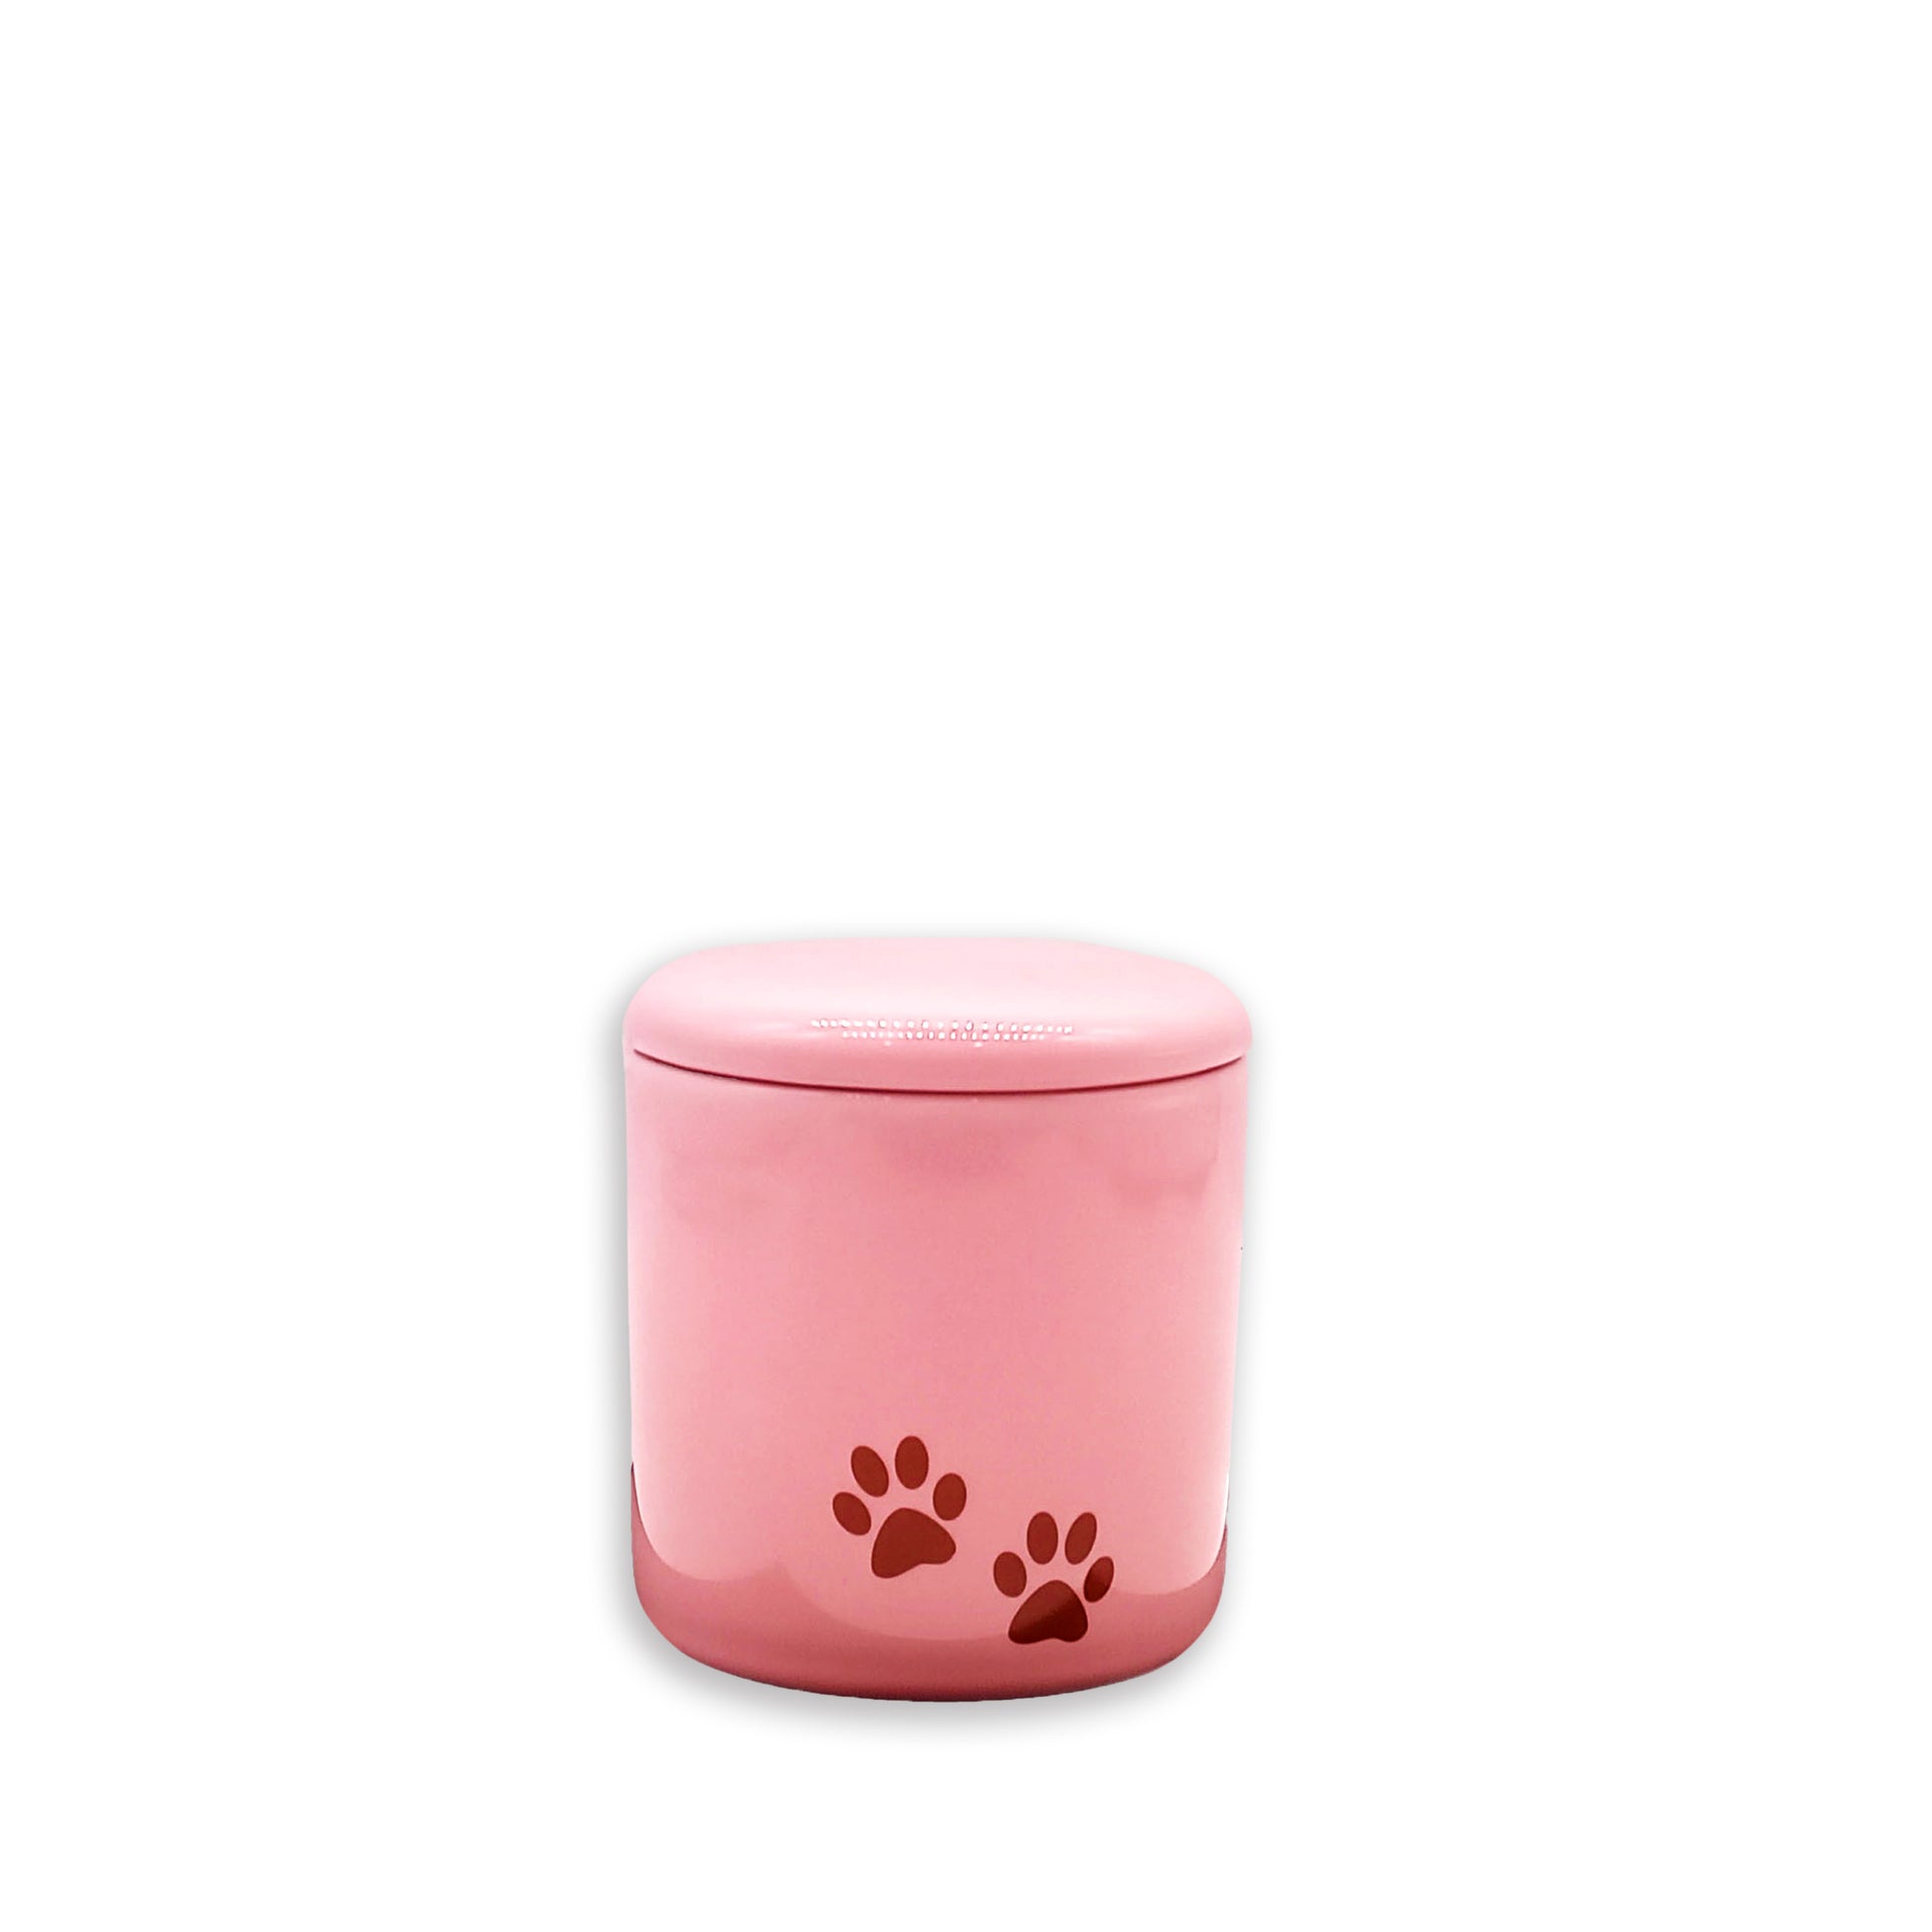 足あと模様のピンクのミニ骨壺